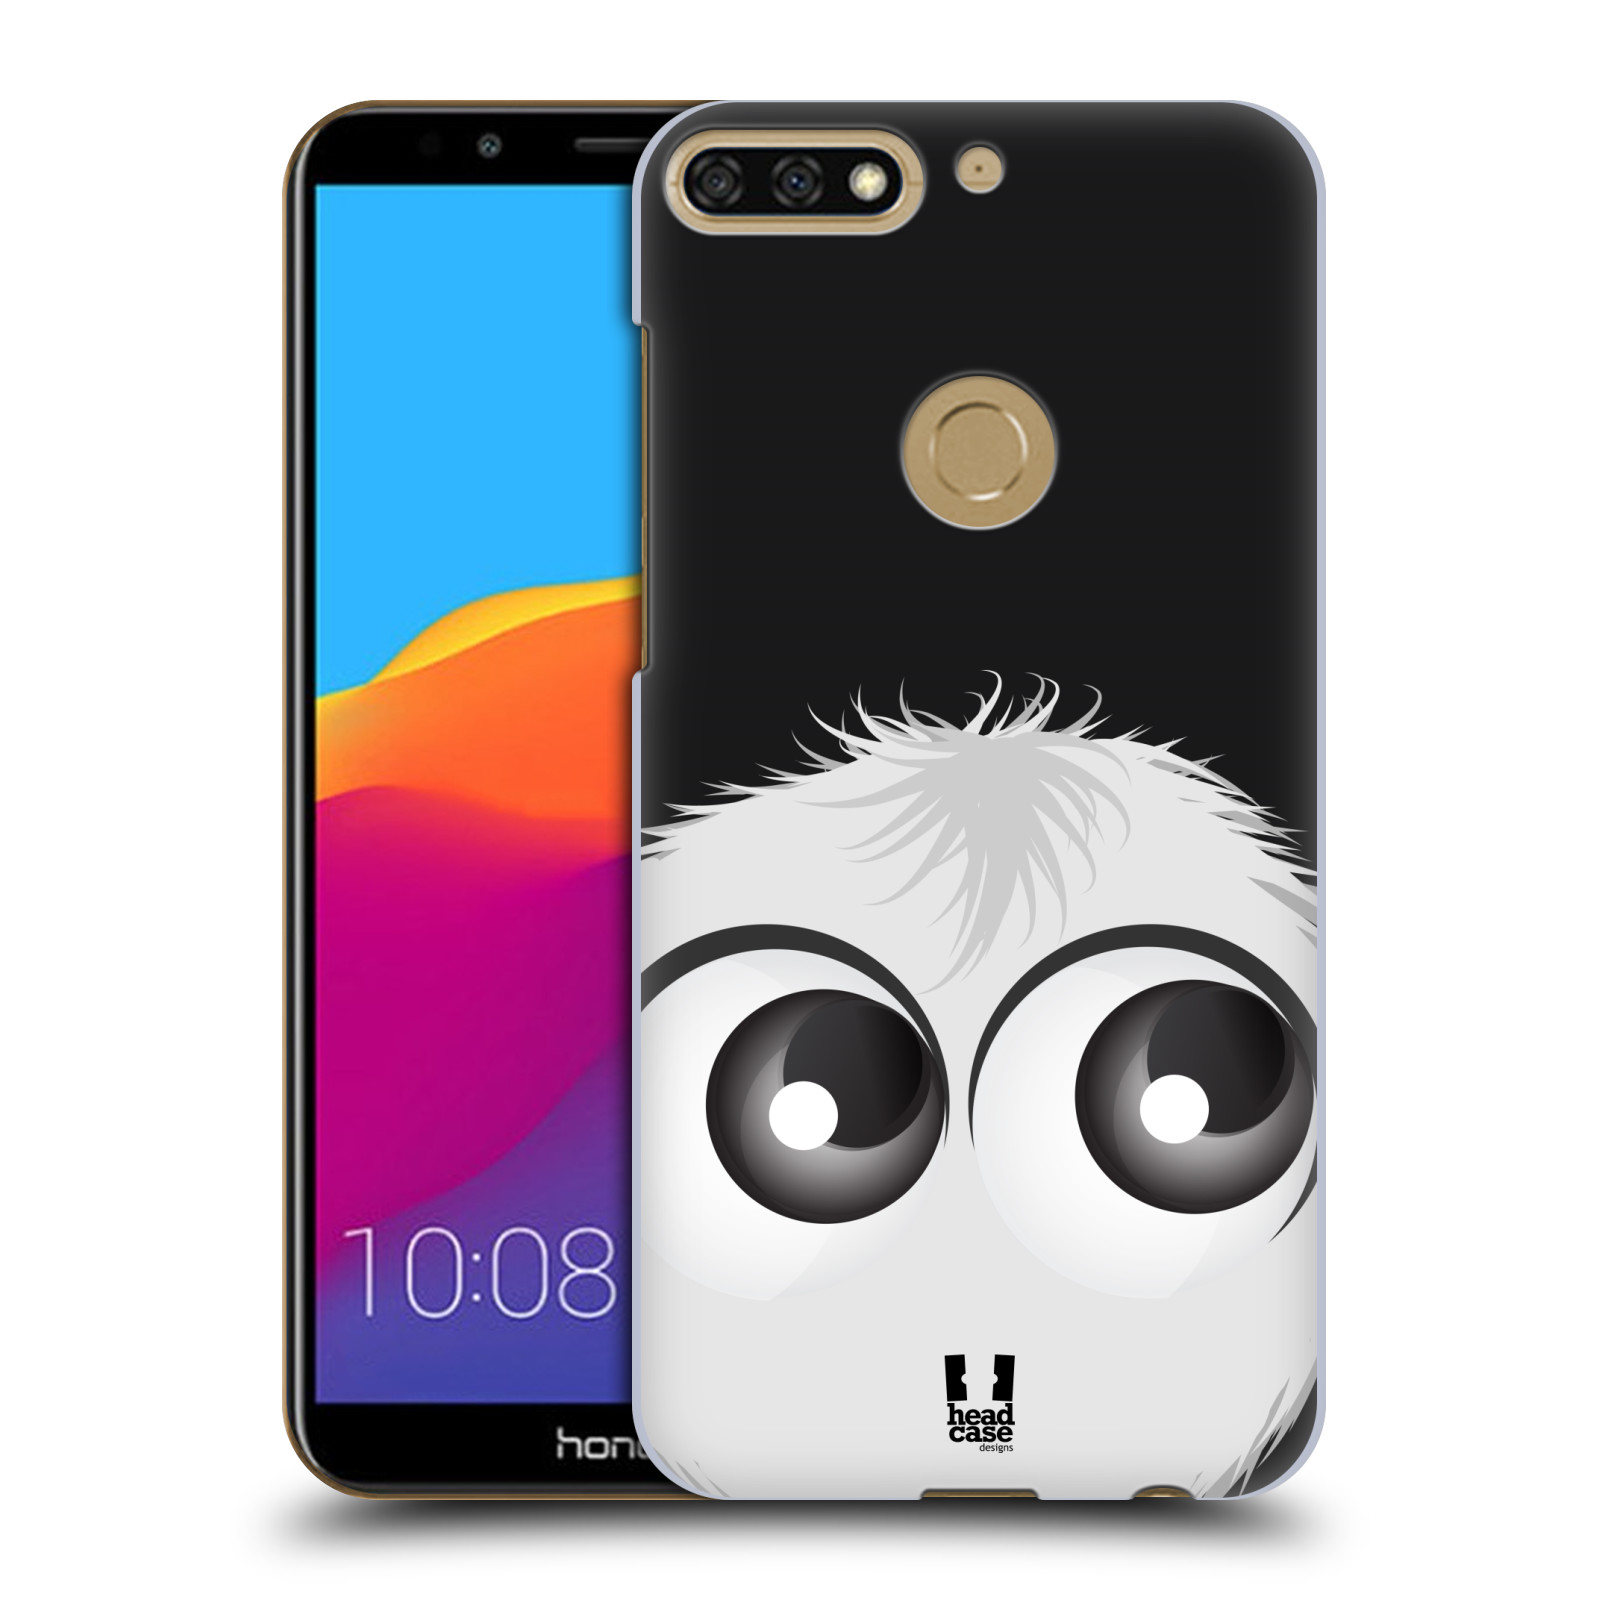 HEAD CASE plastový obal na mobil Honor 7c vzor Barevný chlupatý smajlík BÍLÁ černé pozadí